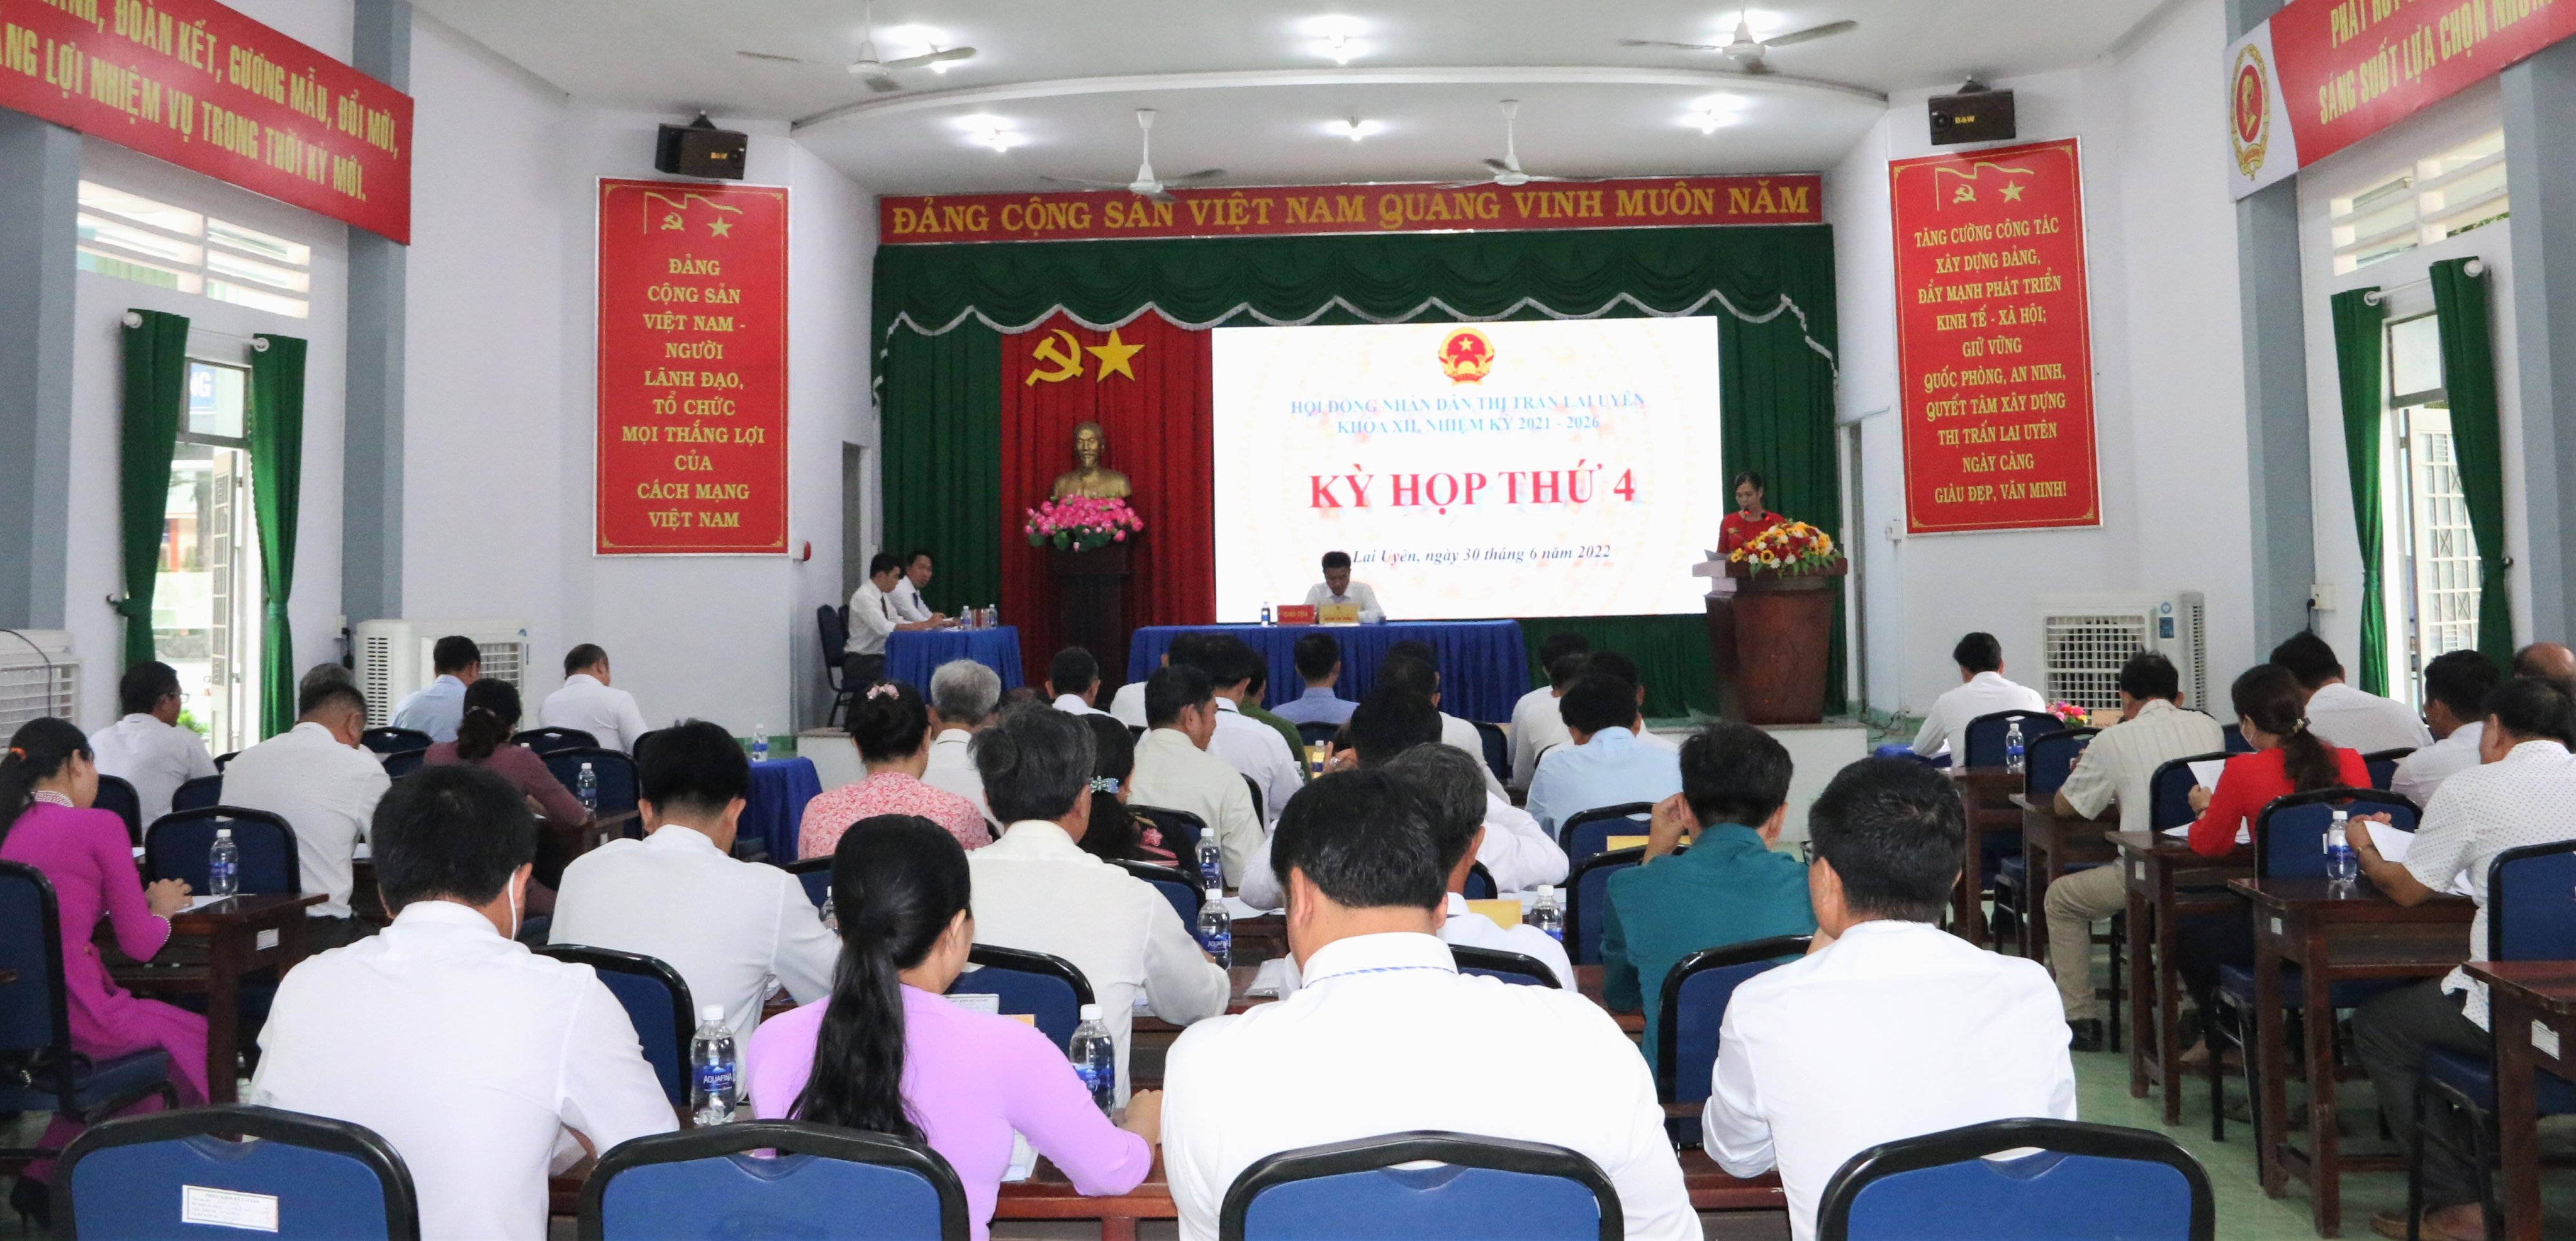 HĐND thị trấn Lai Uyên tổ chức khai mạc kỳ họp lần thứ 4 (thường lệ giữa năm 2022), khóa 12 nhiệm kỳ 2021-2026